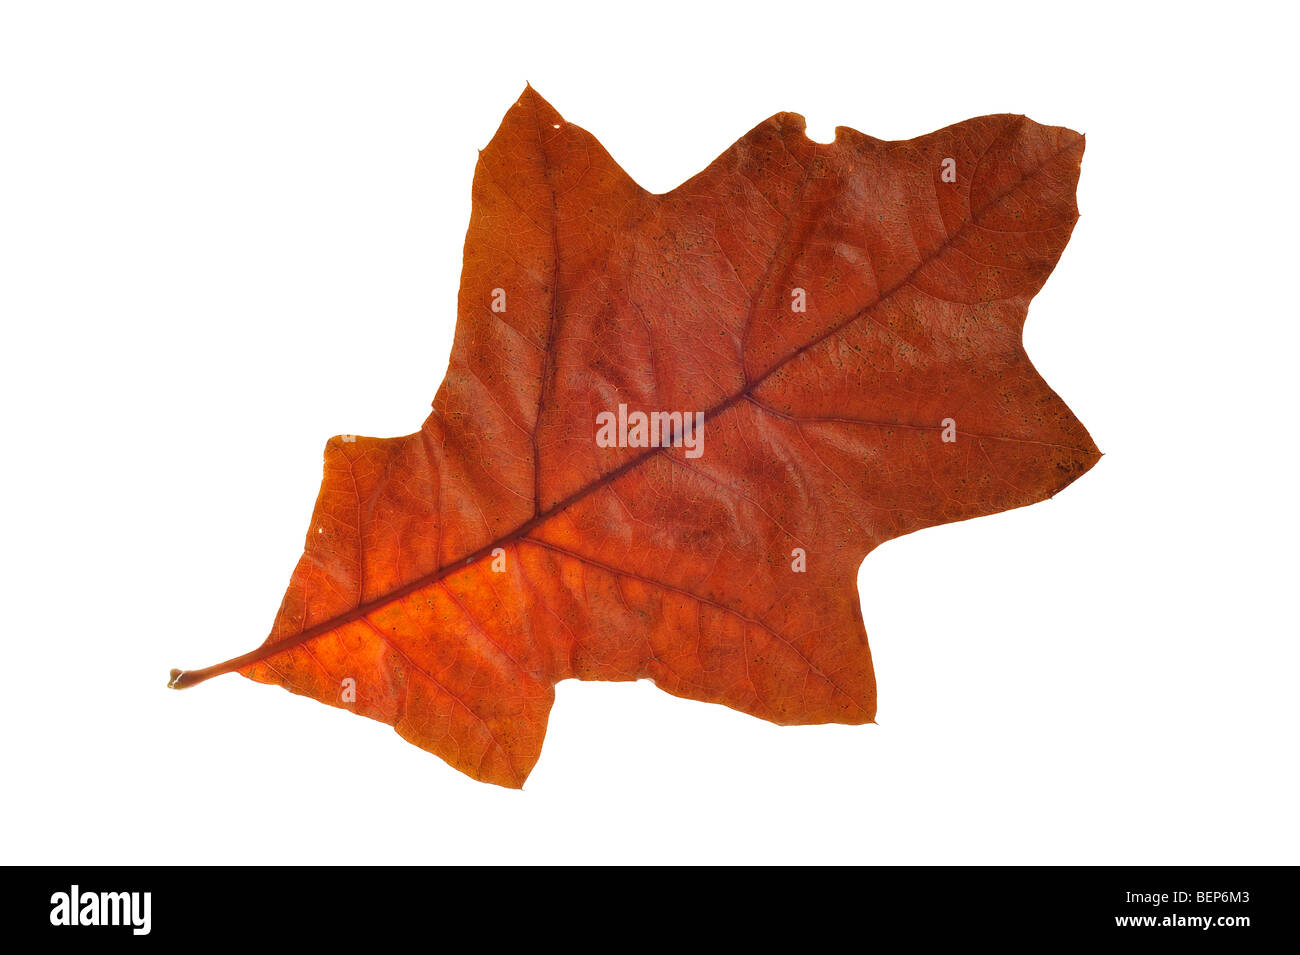 Chêne rouge du sud / Spanish oak / chêne des marais (Quercus falcata) feuille en couleurs de l'automne, natif de la sud-est des États-Unis Banque D'Images